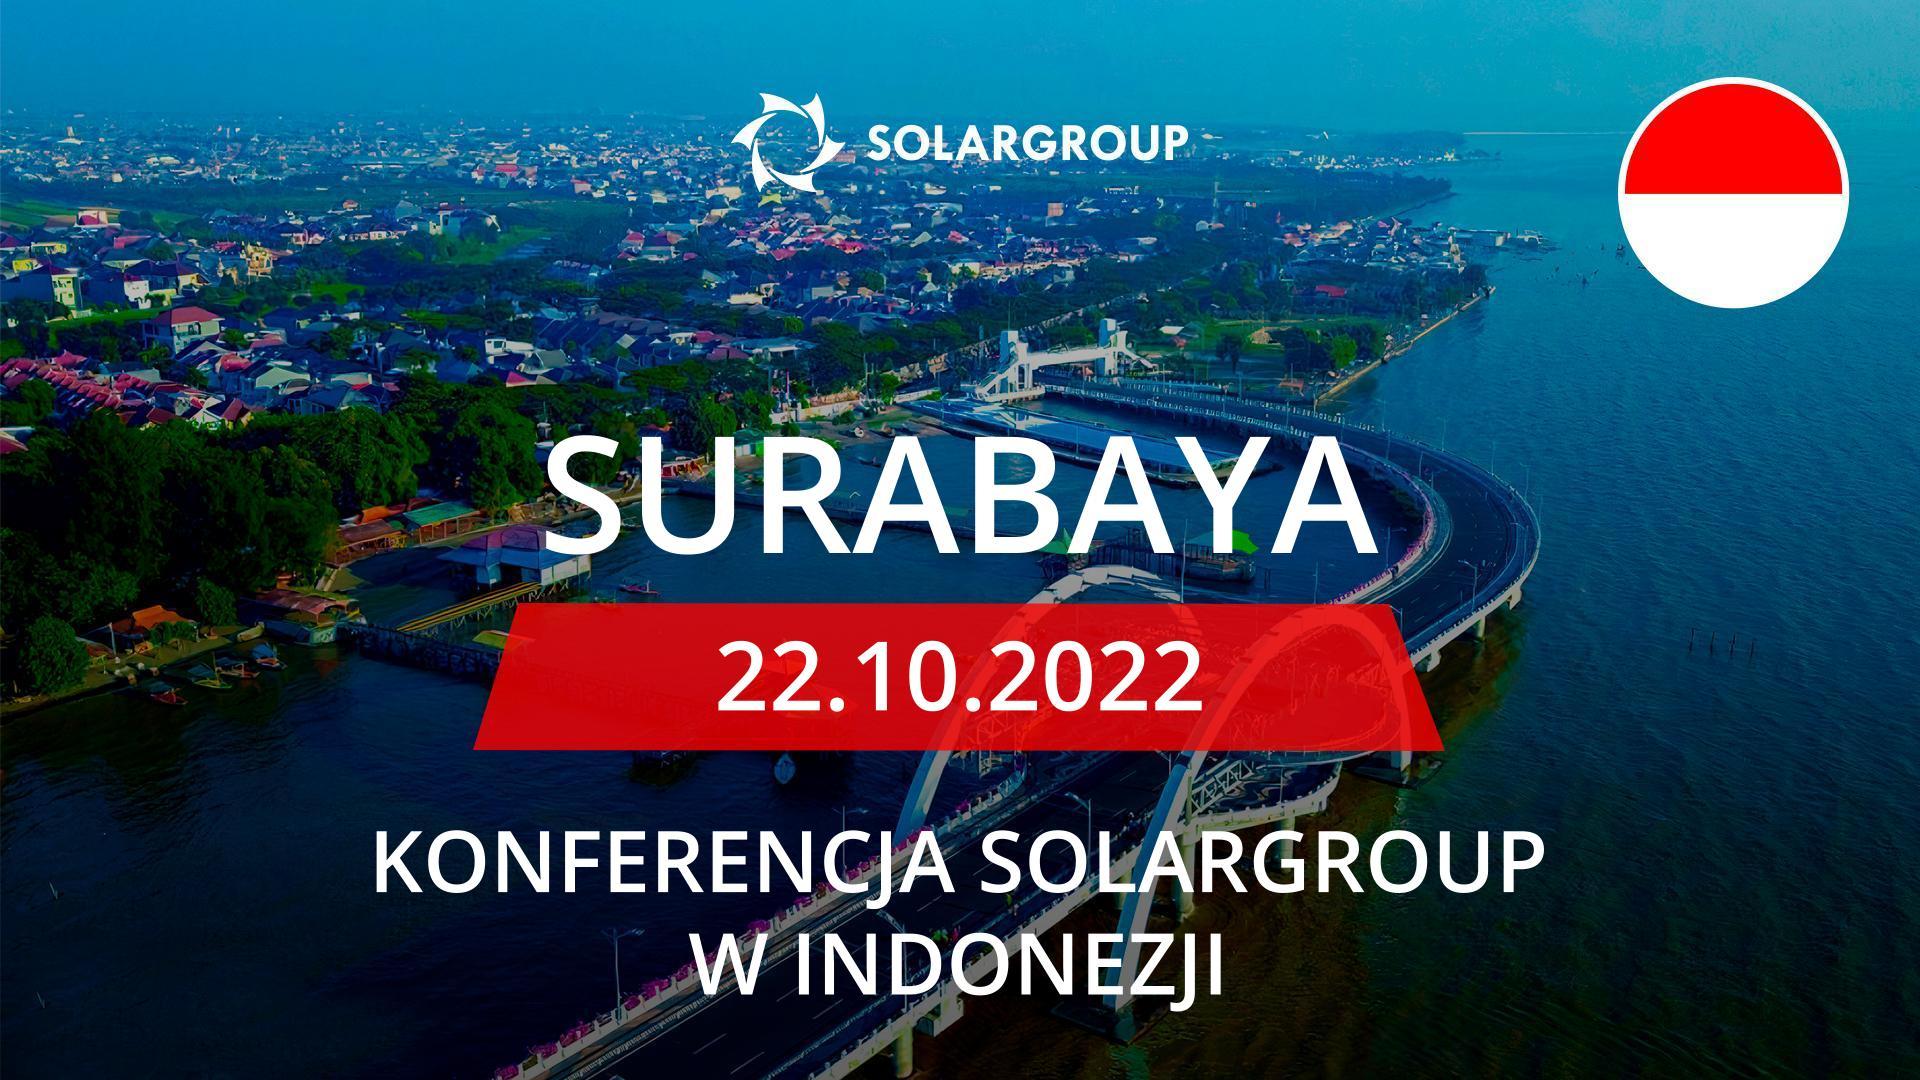 Konferencja SOLARGROUP w Indonezji: 22 października, Surabaya